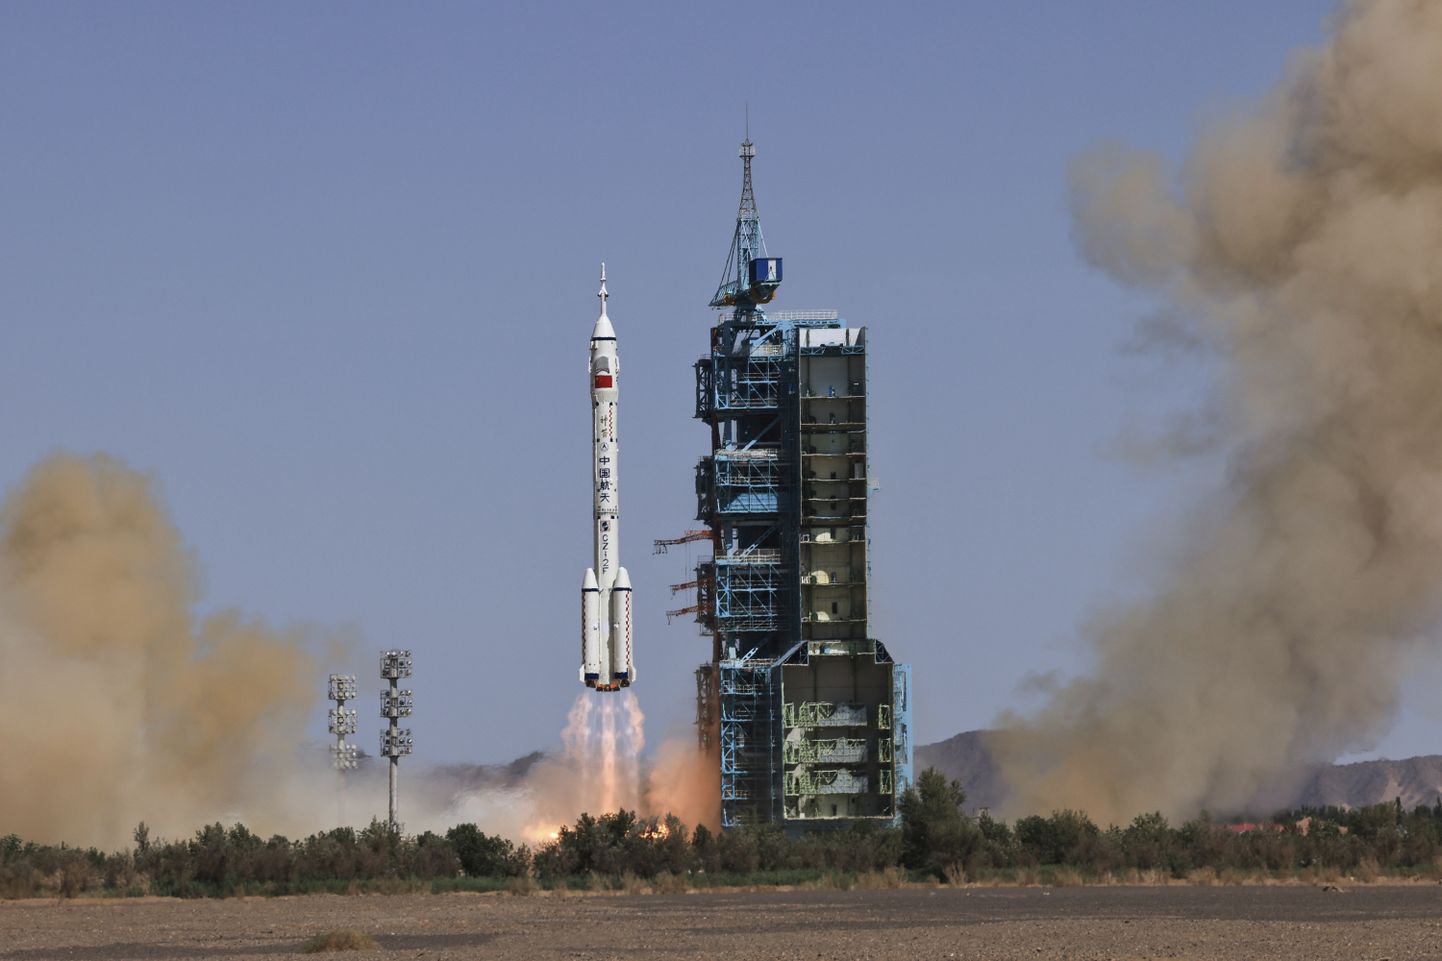 Hiina saatis kosmosesse raketi kolmeliikmelise meeskonnaga, et viia lõpule orbitaaljaama ehitus.